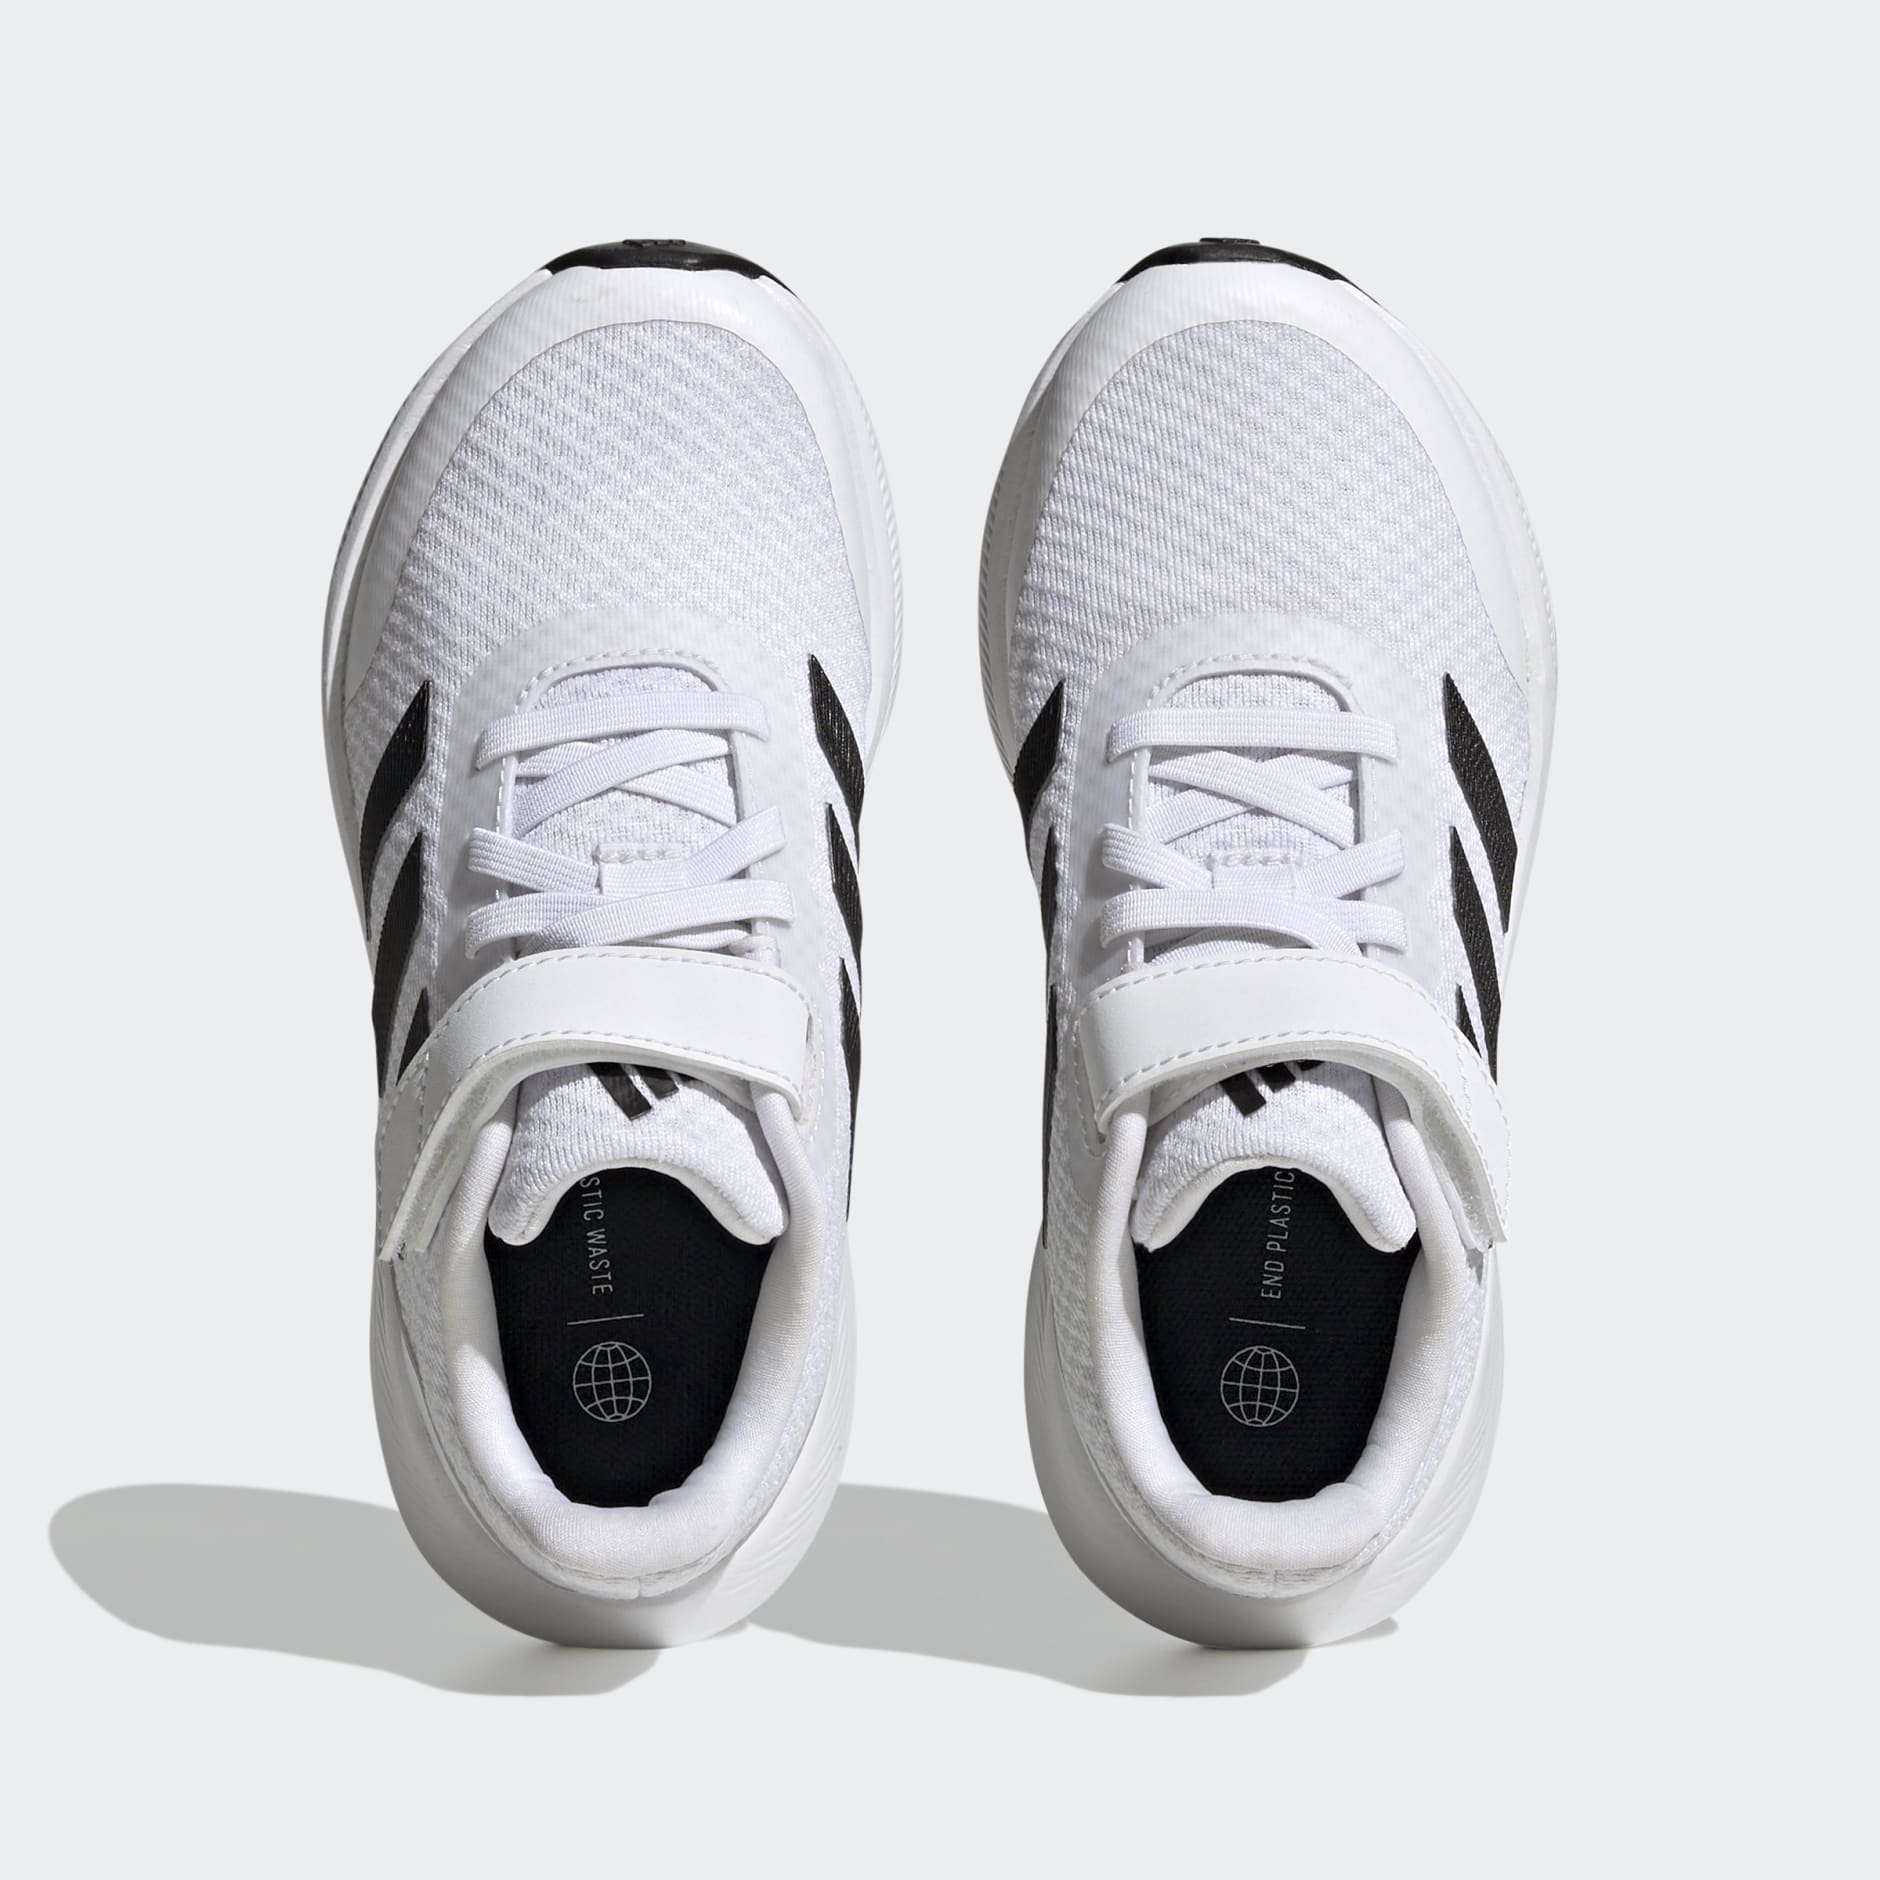 Kids Shoes - RunFalcon 3.0 Elastic Lace Top Strap Shoes - White 